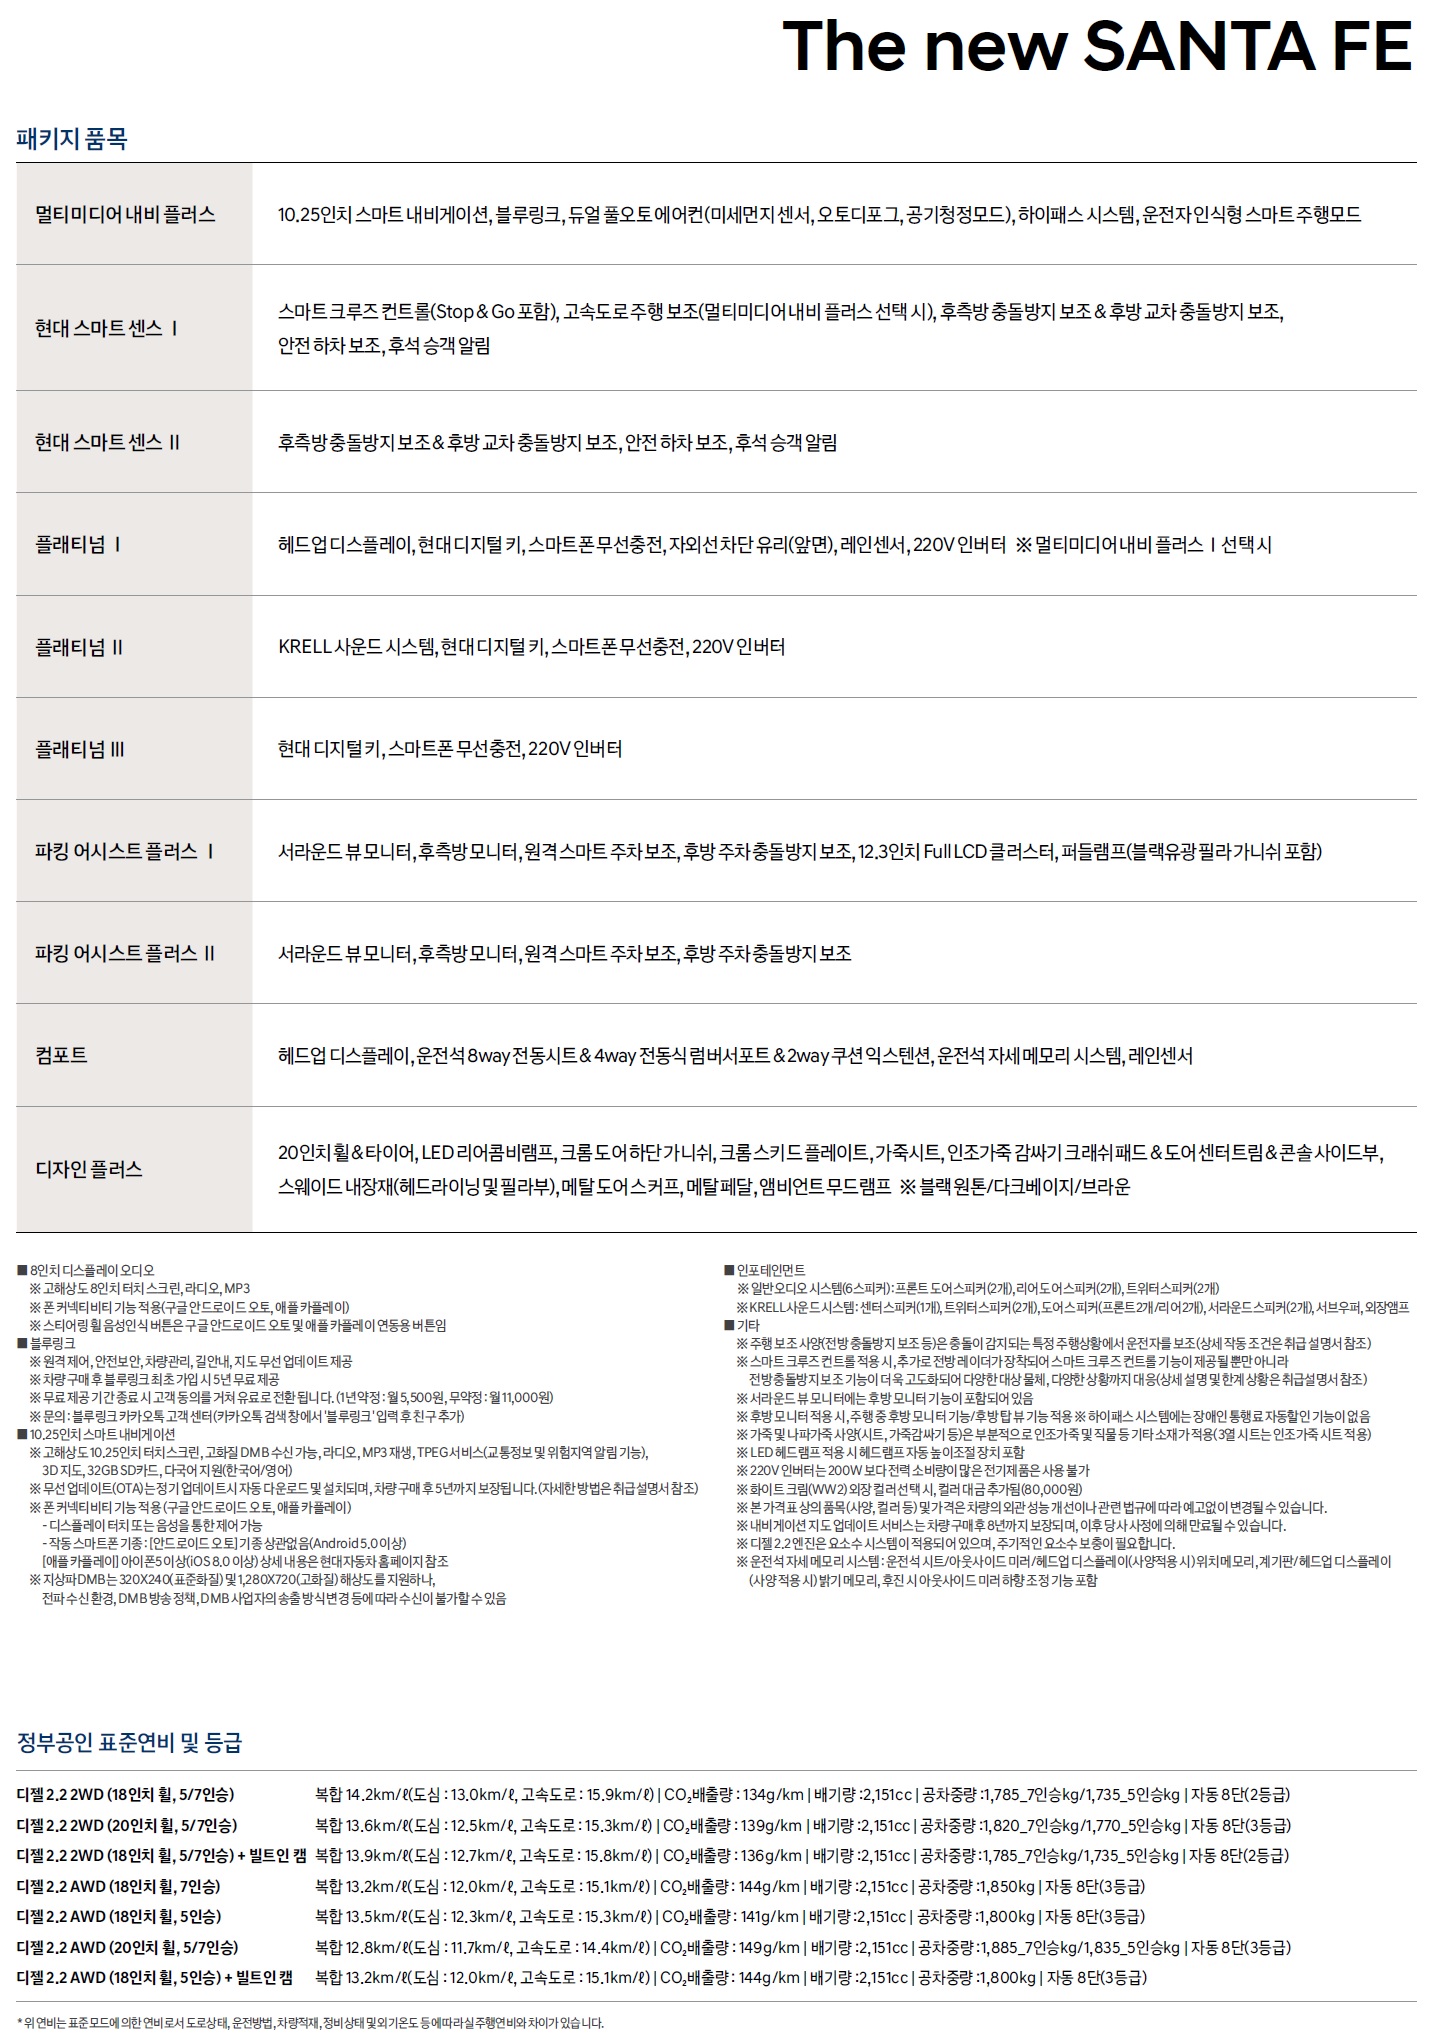 싼타페 가격표 - 2020년 07월 -2.jpg